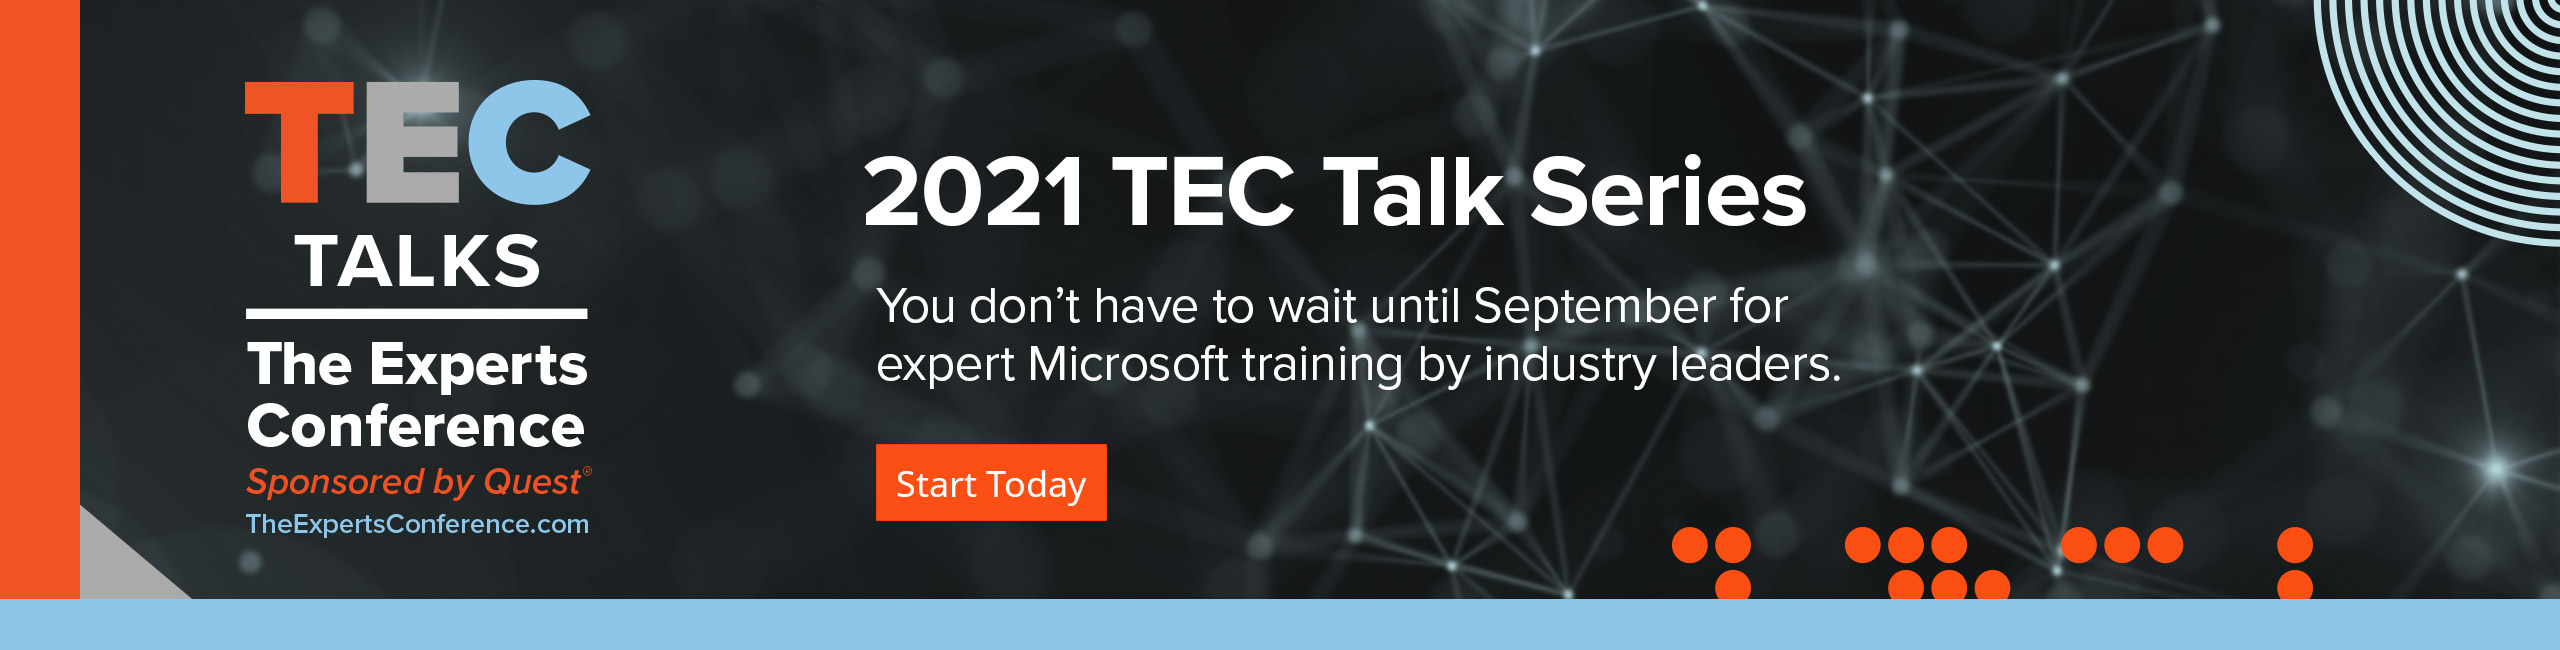 2021 TEC Talks Series